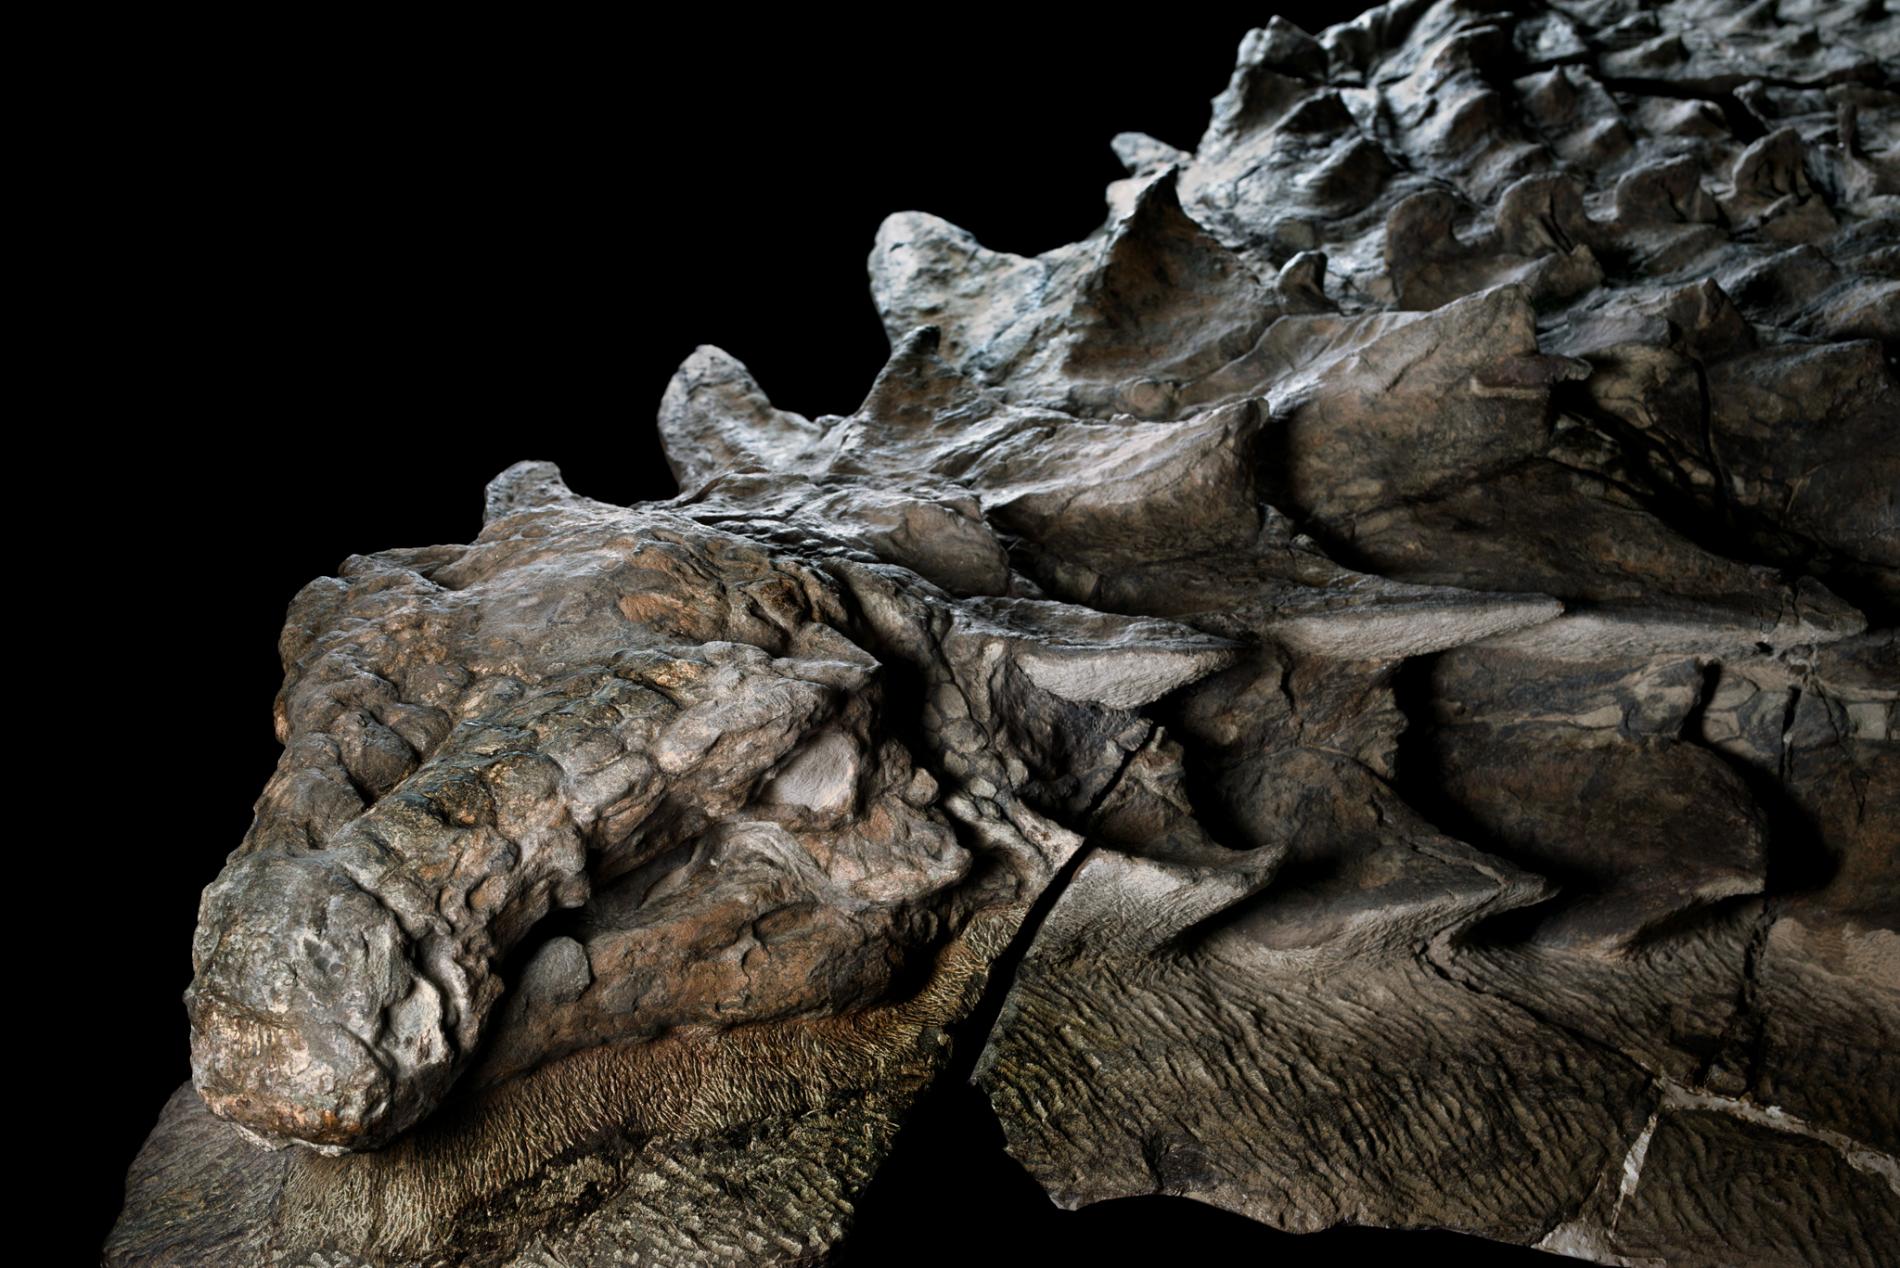 Une tête complète, des écailles semblant presque intactes : l'état de conservation de ce nodosaure retrouvé dans une mine est surprenant. L’animal est probablement mort noyé dans une inondation soudaine, il y a plus 110 millions d’années. © National Geographic, Royal Tyrrell Museum